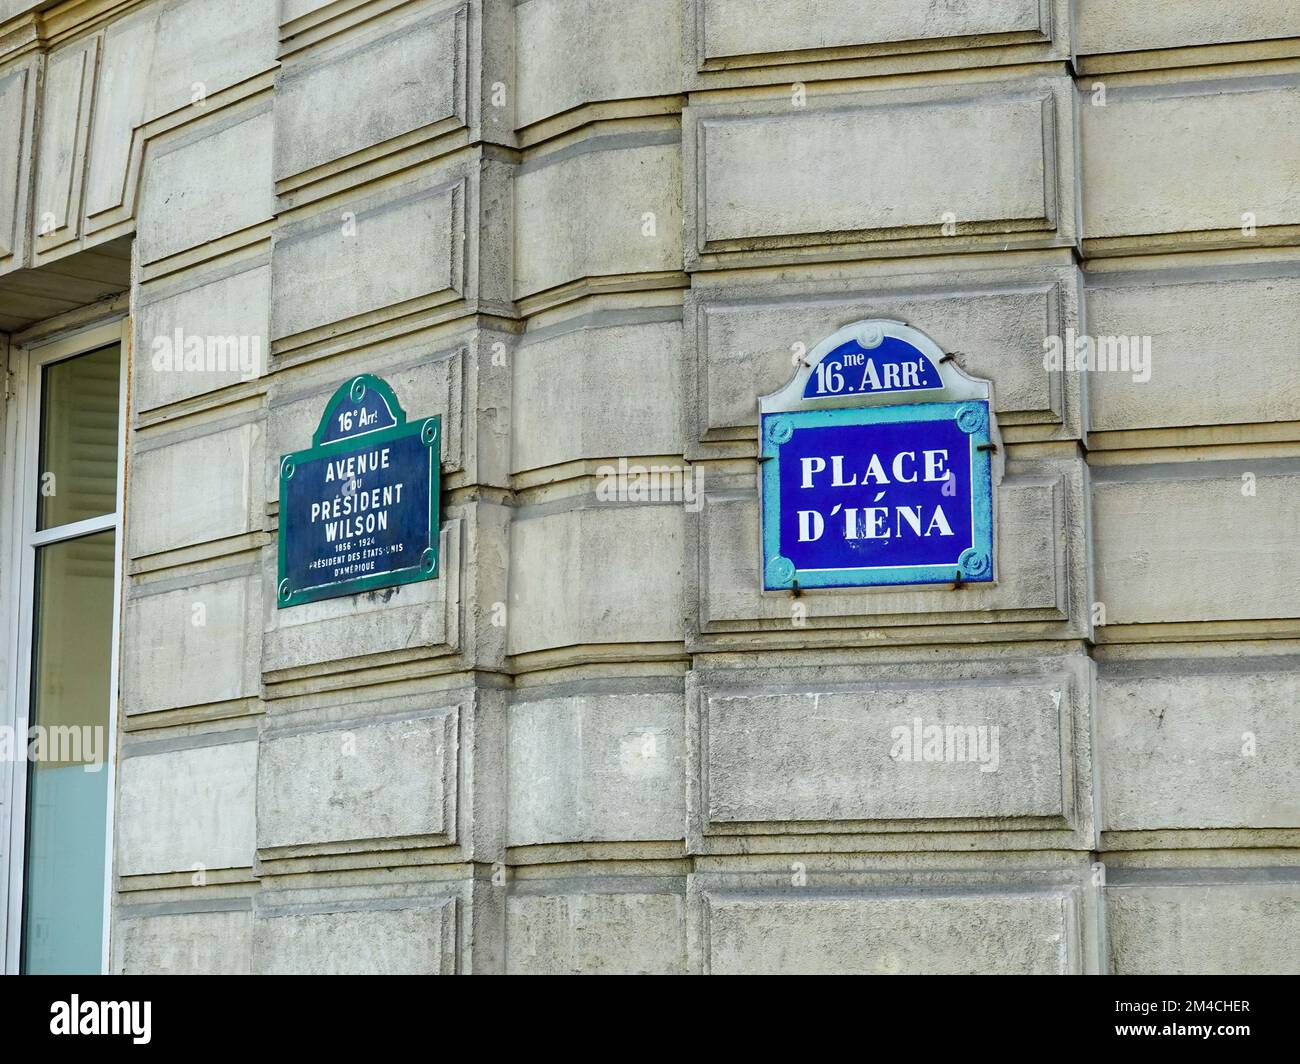 Panneaux de rue, plaques, Avenue President Wilson et place d’Iéna, 16th arrondissement, Paris, France. Banque D'Images